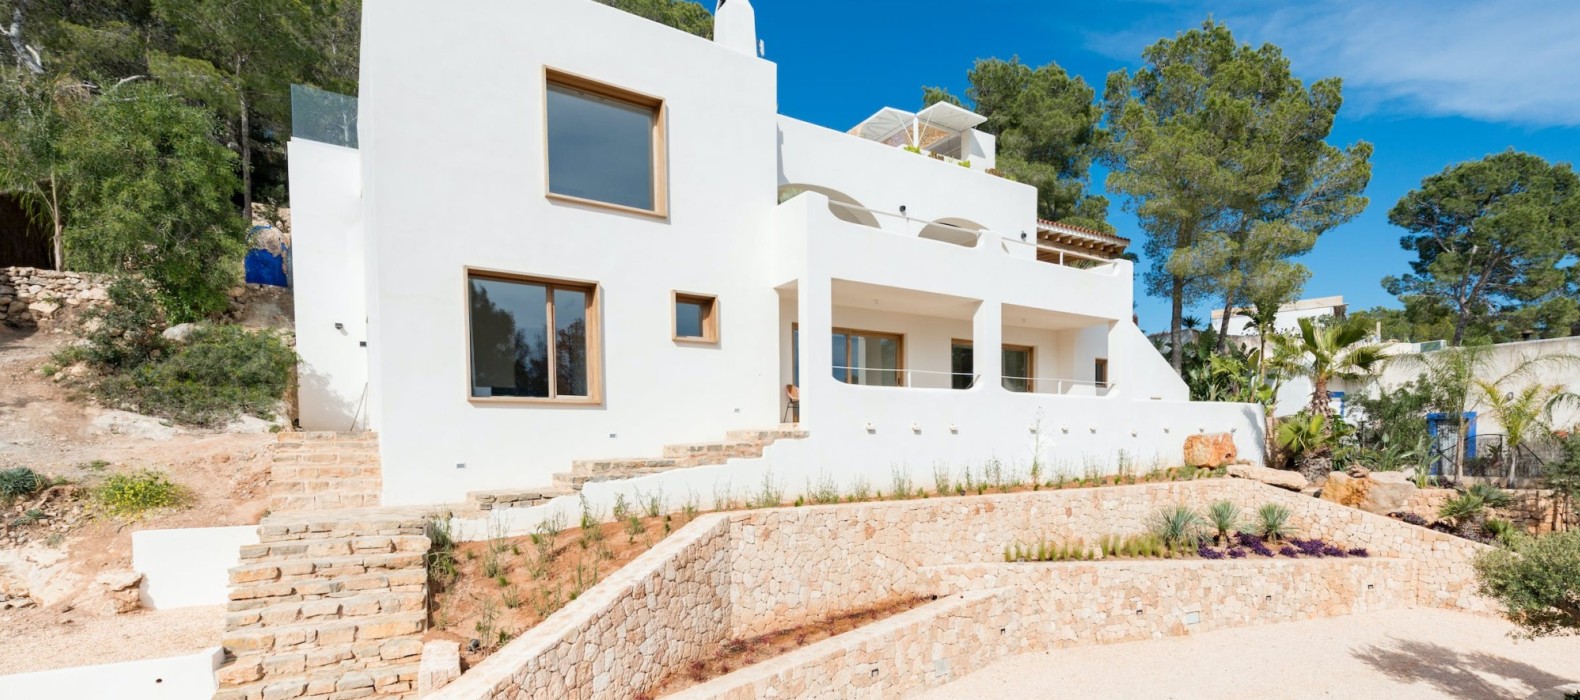 Exterior villa view of Villa The Sweet Escape in Ibiza